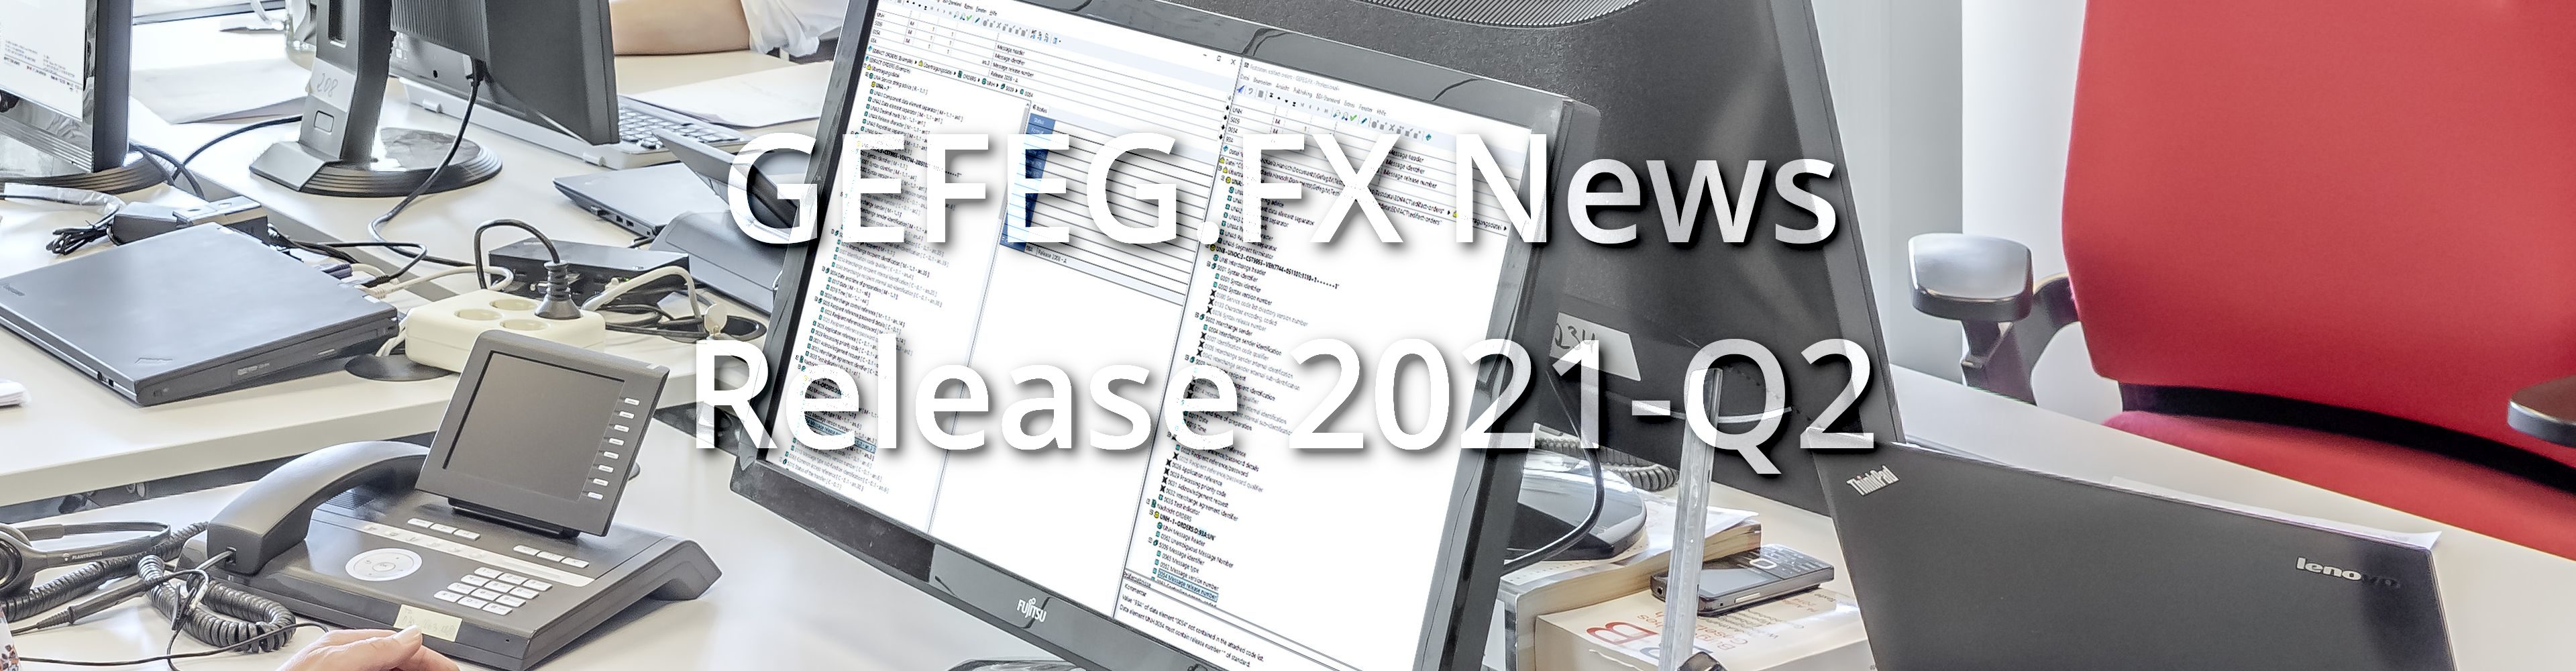 GEFEG.FX News Release 2021-Q2